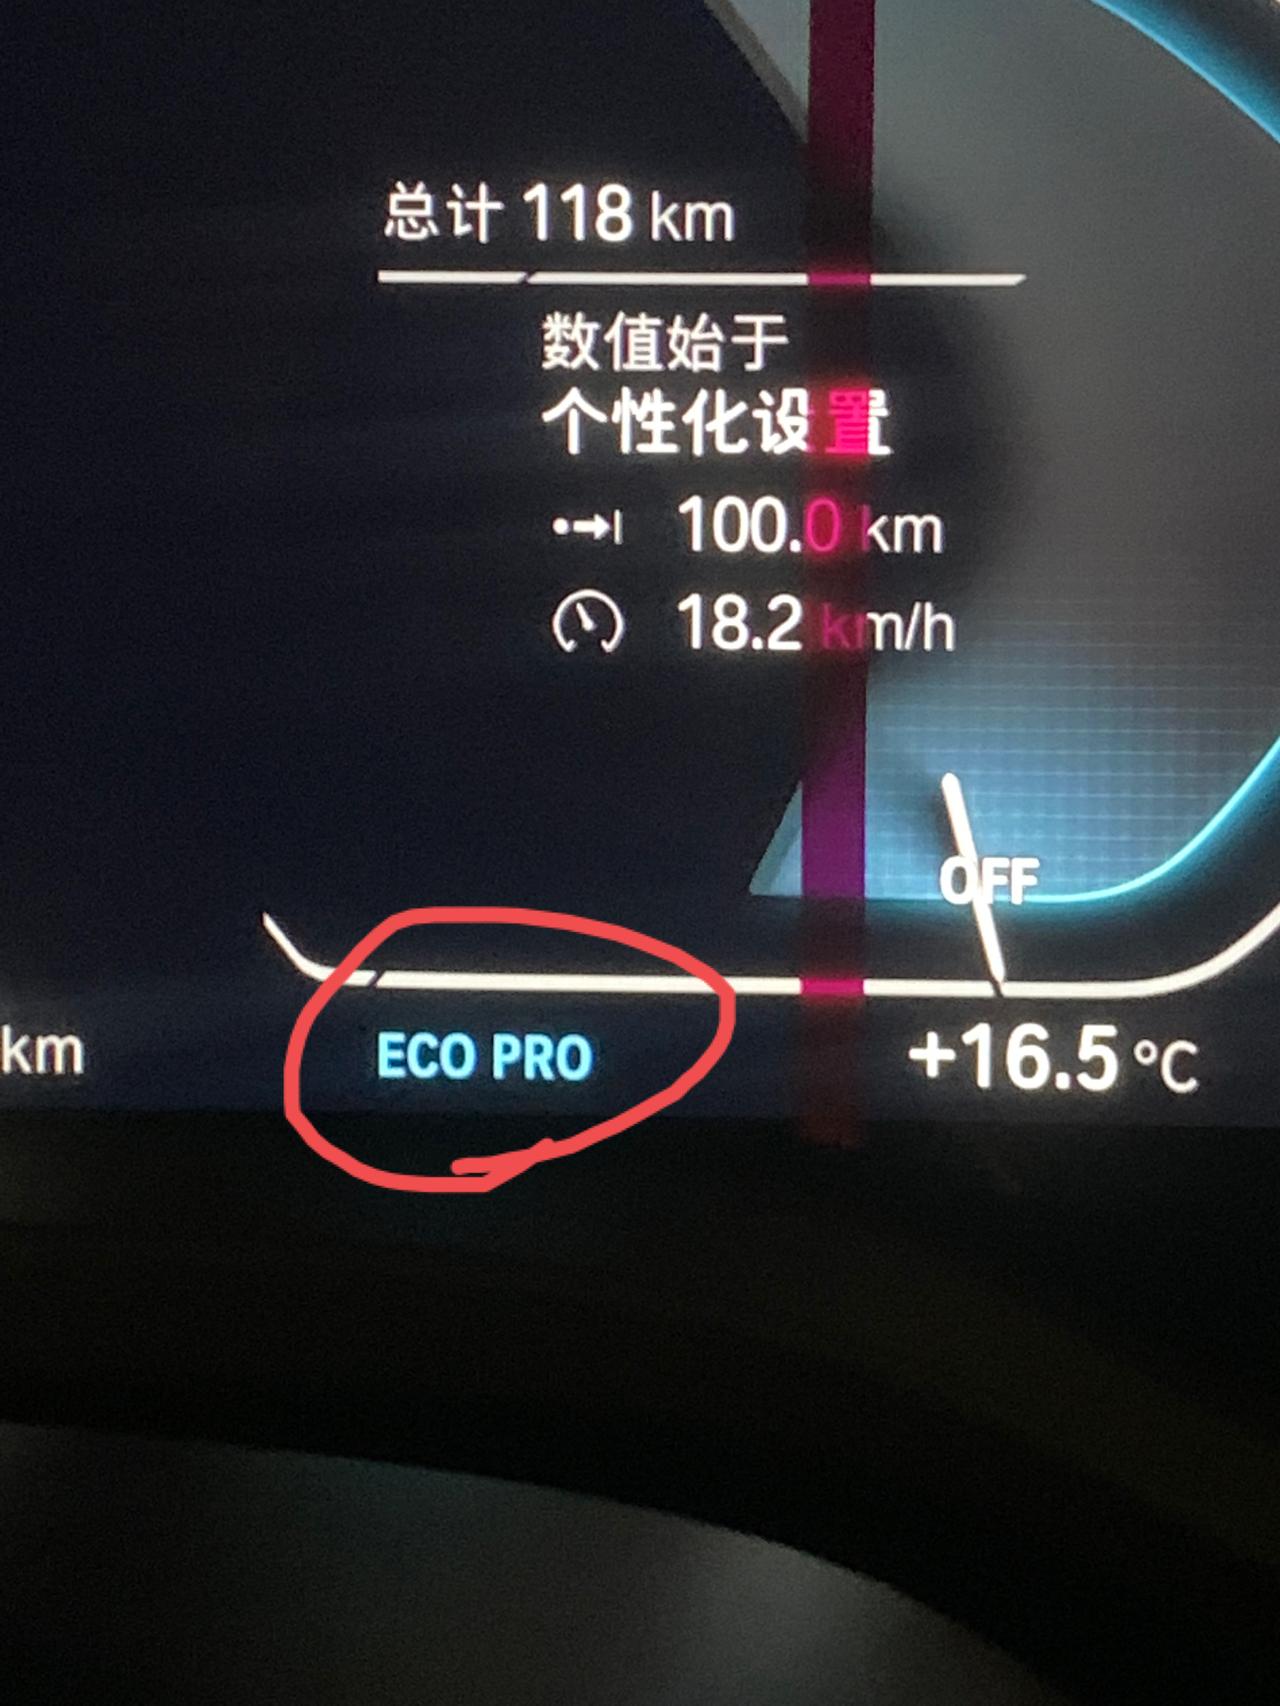 宝马iX3 按一次eco就显示eco pro，在按一次下面就多了一排英文 啥意思捏